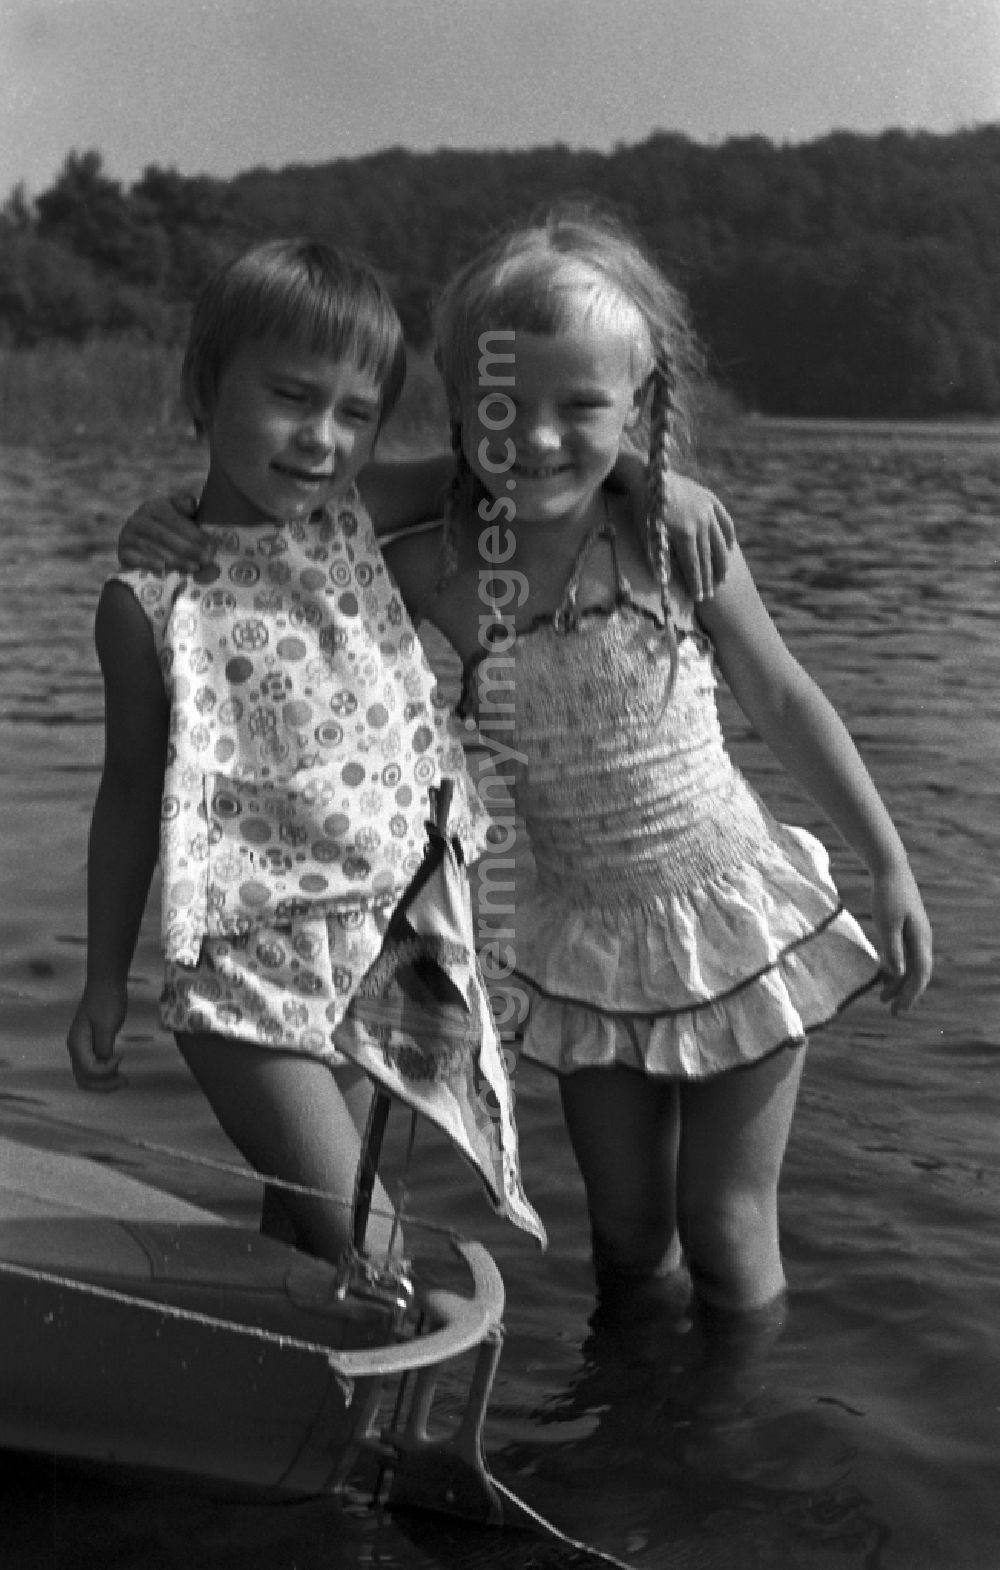 Neuruppin OT Stendenitz: Two girls standing in water in Brandenburg. Family camping holidays at Rottstielfließ on Tornowsee in Brandenburg